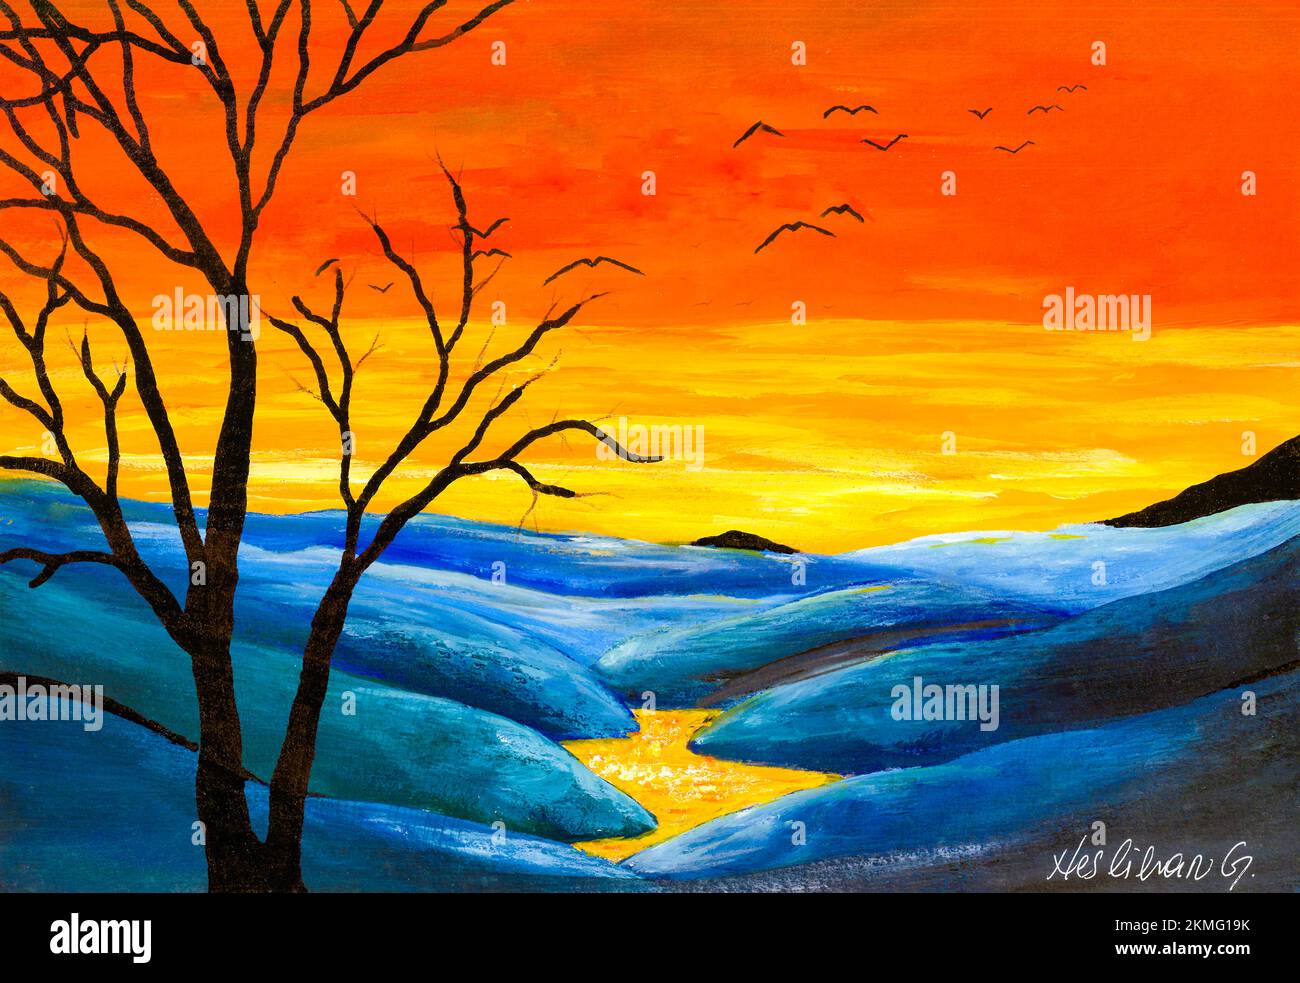 Originale pittura acrilica di colline blu, nuvole gialle e cielo arancione. Dipinto dal fotografo. Foto Stock